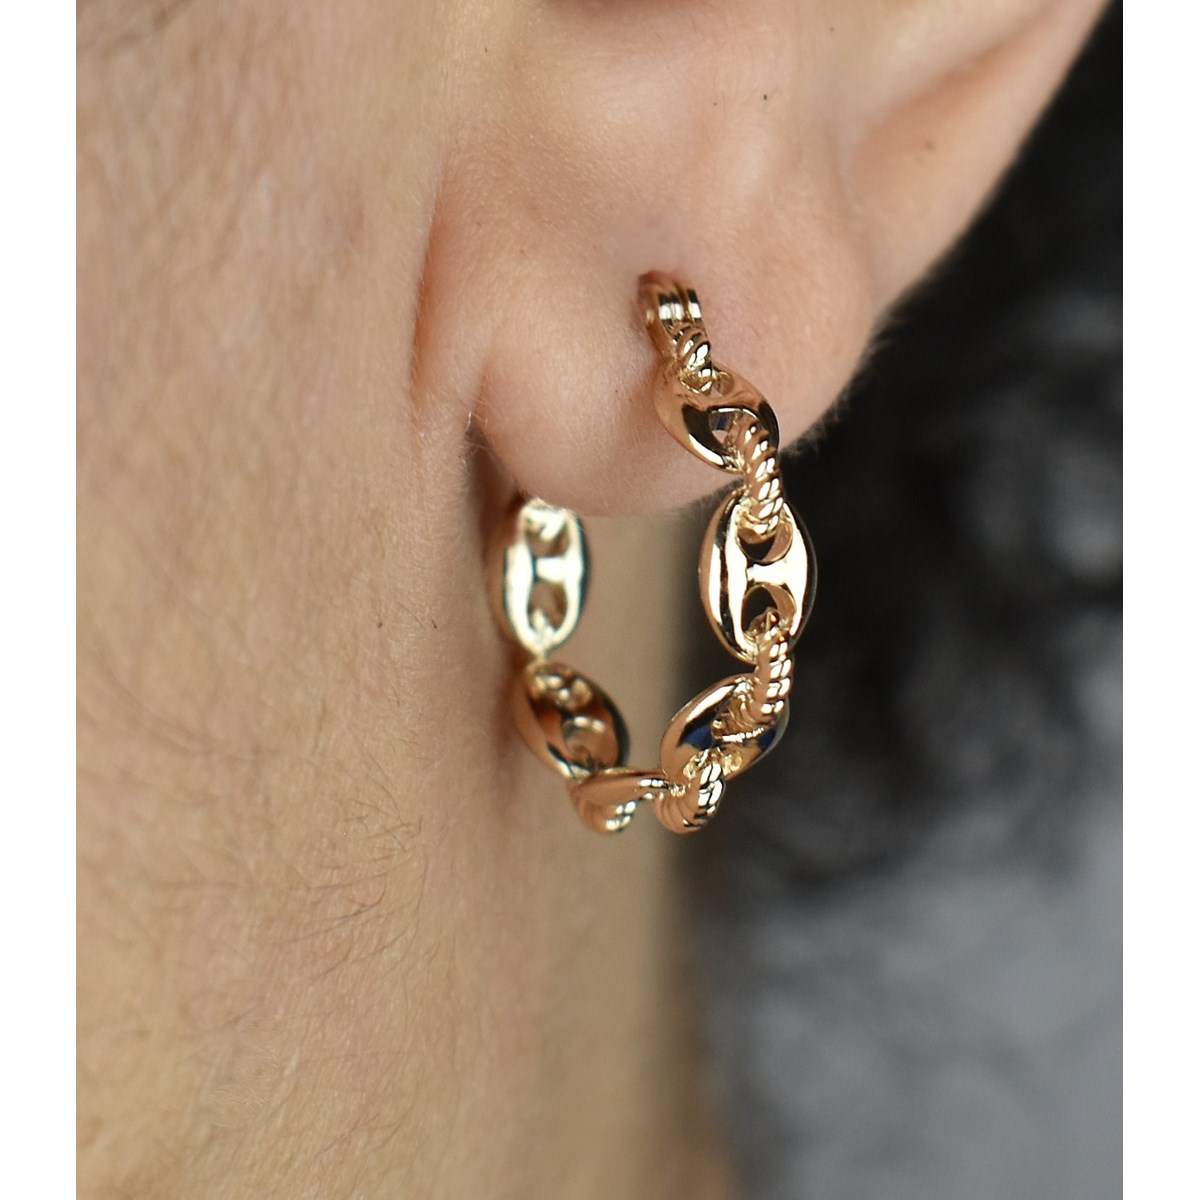 Boucles d'oreilles Créoles suite de grain de café reliés par un anneau effet tressé Plaqué or 750 3 microns - vue 2